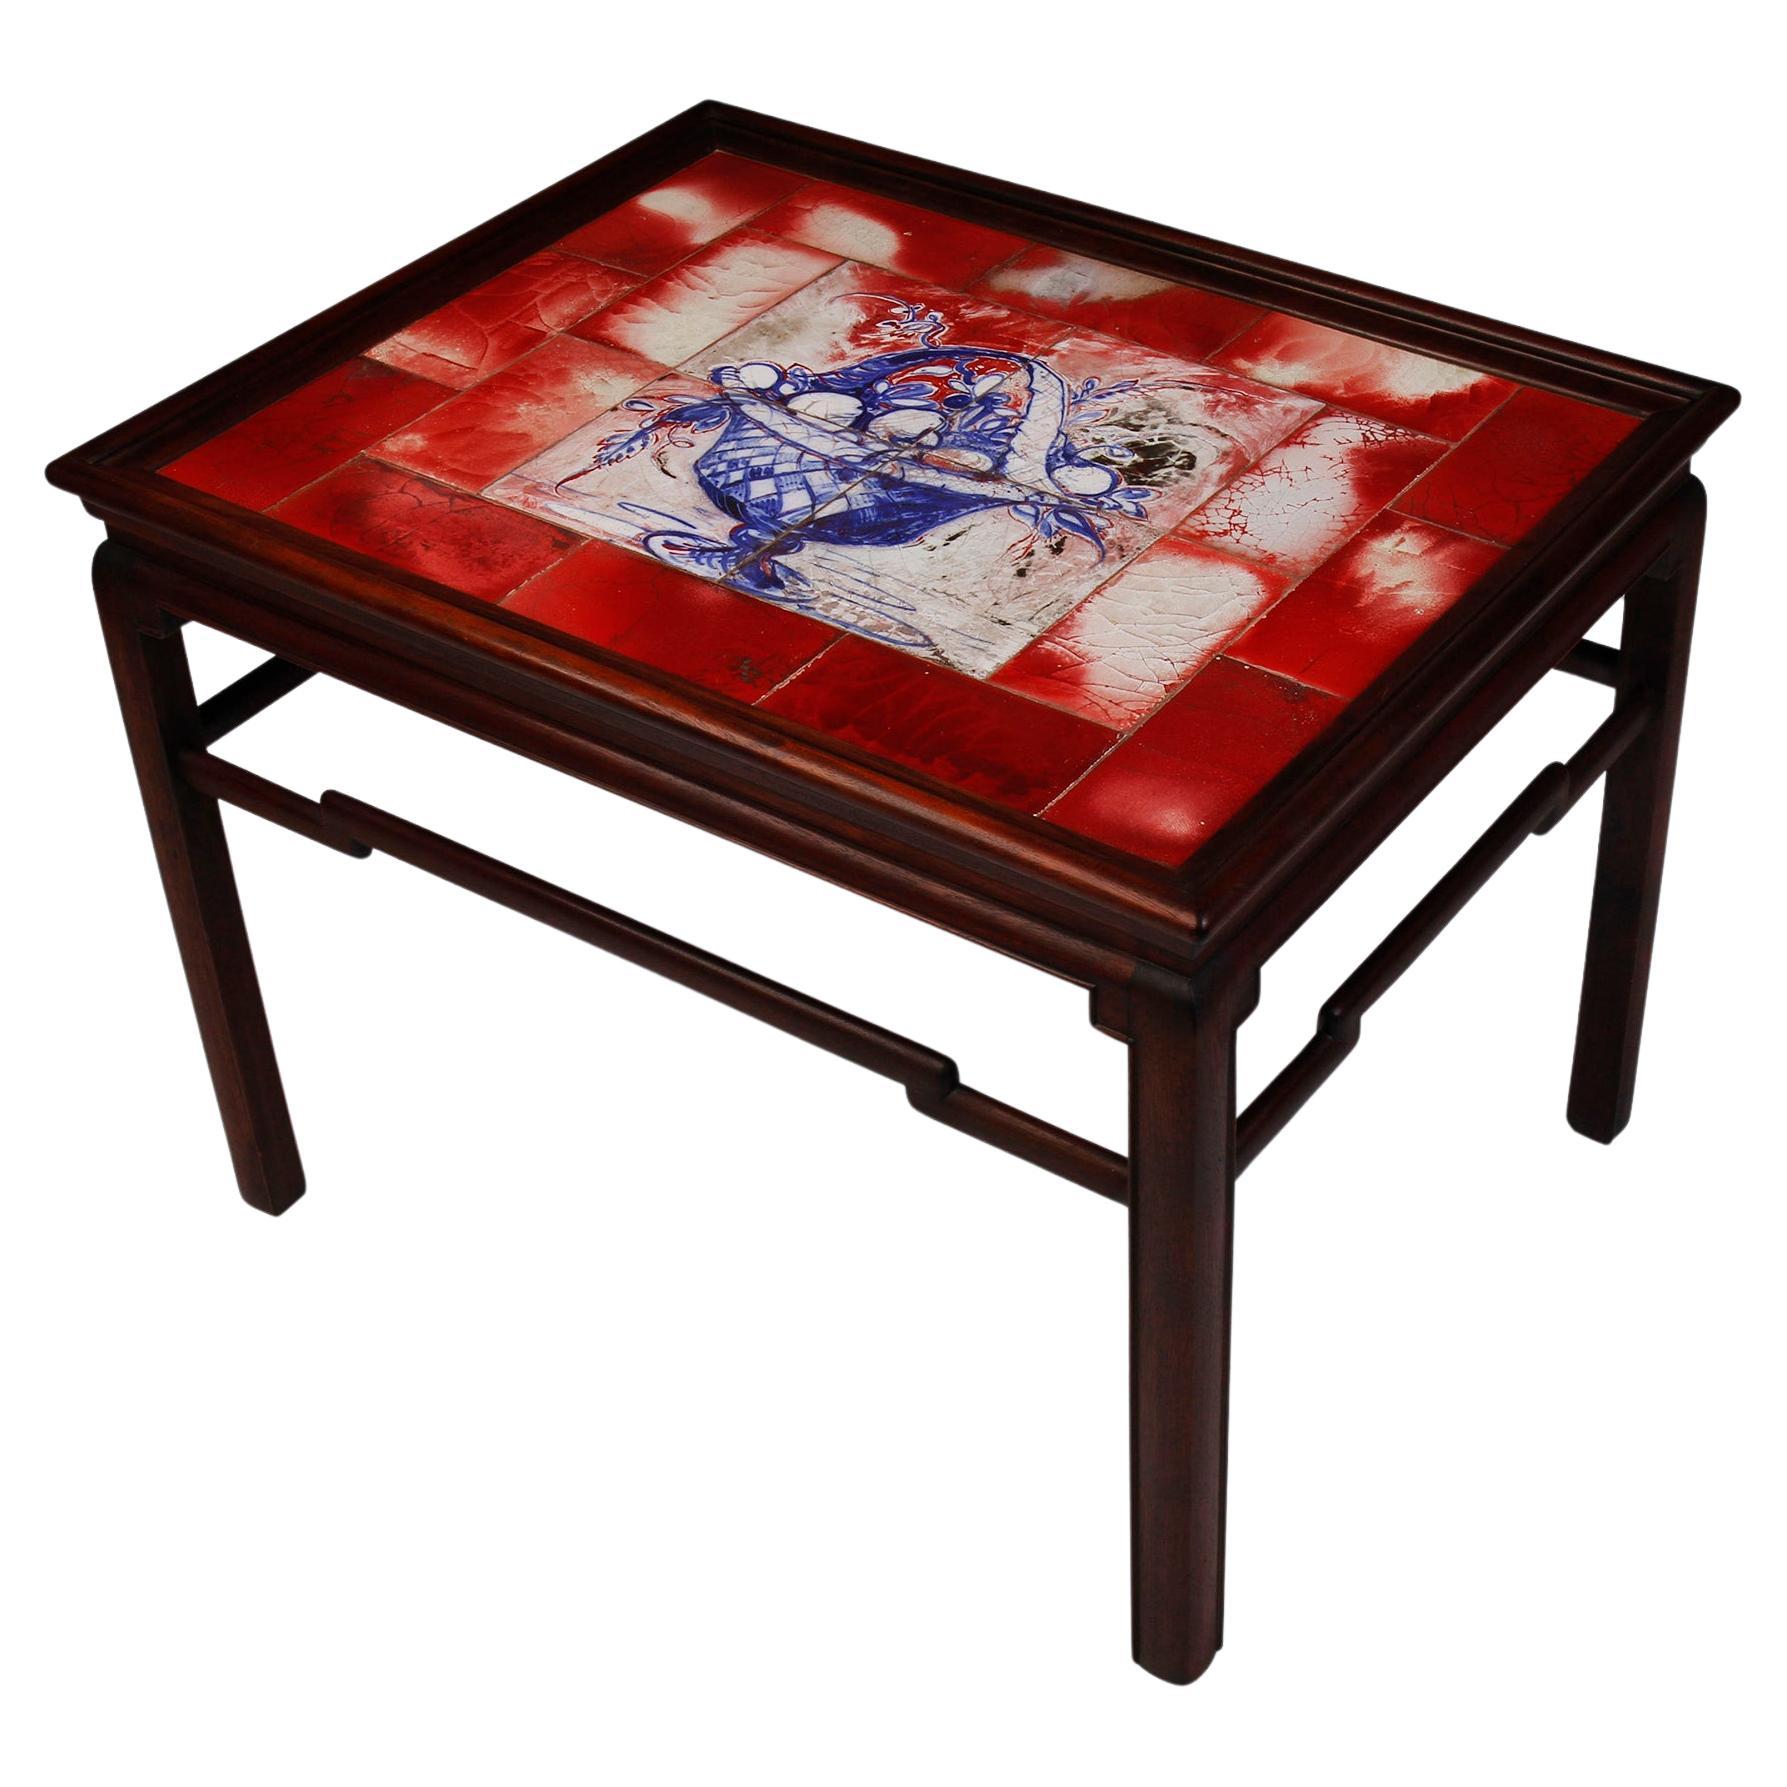 Table basse d'inspiration chinoise avec carreaux aux nuances rouges, blanches et bleues en vente